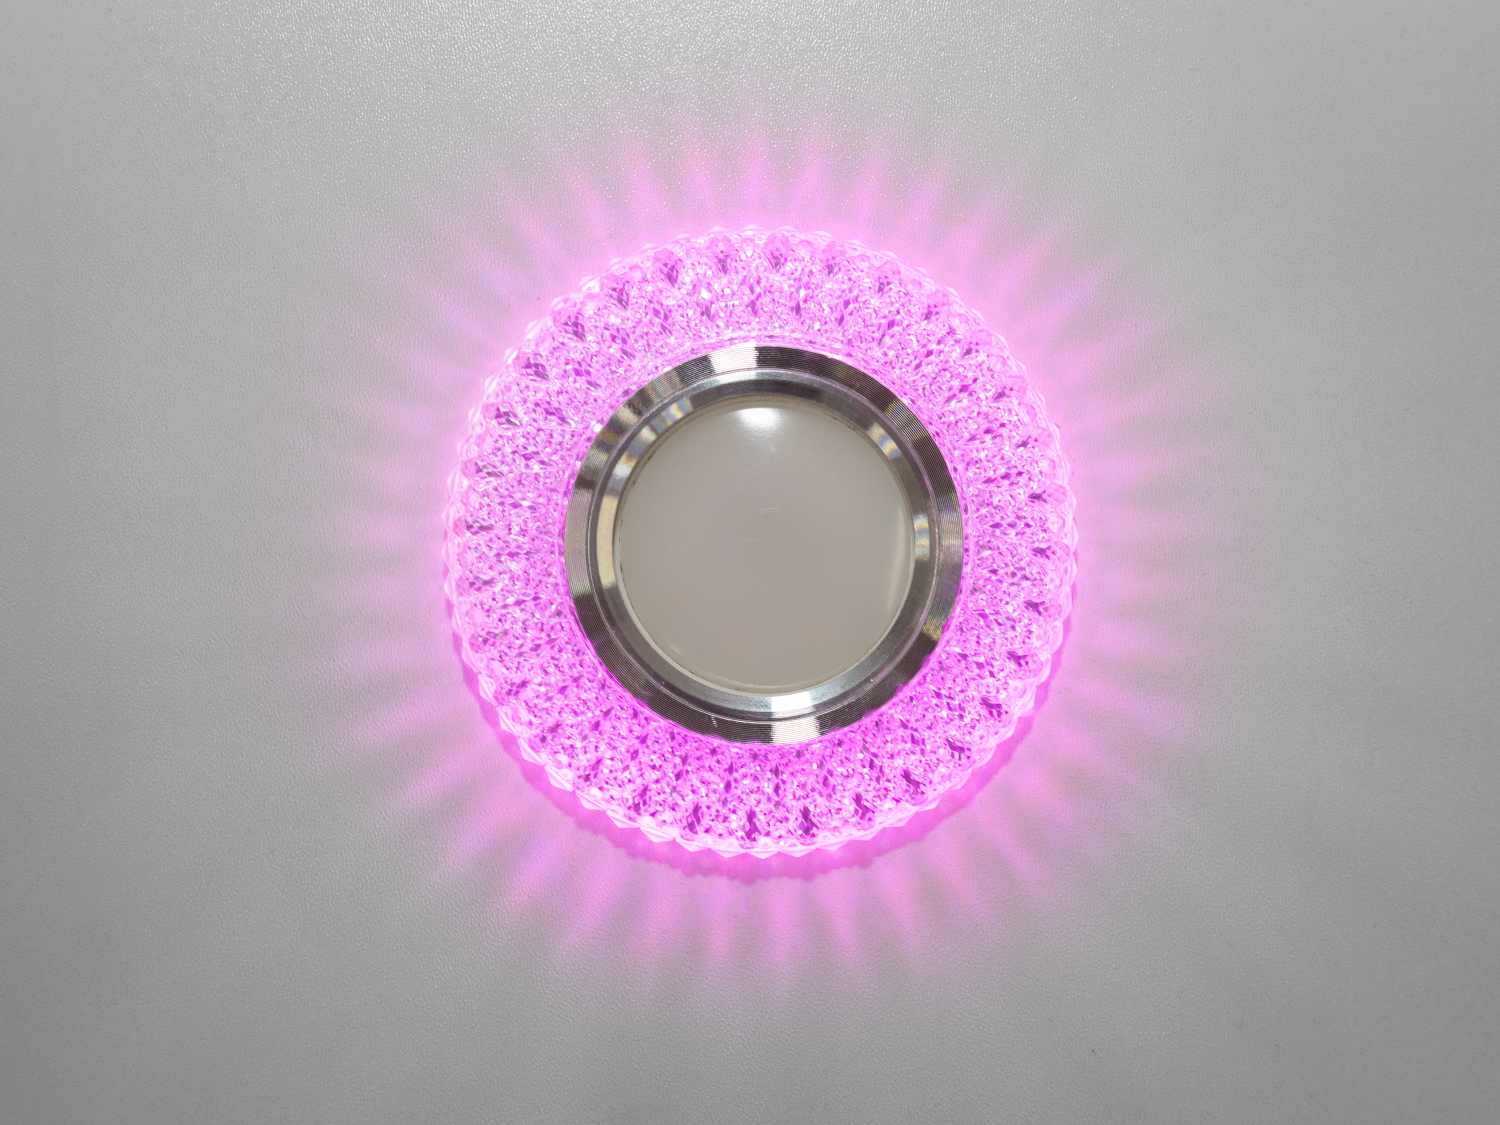 Точковий світильник з LED підсвічуванням є останнім криком моди від ТМ «Діаша», перетворюючи звичайне освітлення на чарівне дійство світла та тіней. Цей світильник не просто освітлює простір, він дарує йому життя і динаміку, завдяки своєму унікальному дизайну та м'якому світловому відблиску.
Витончені акрилові 